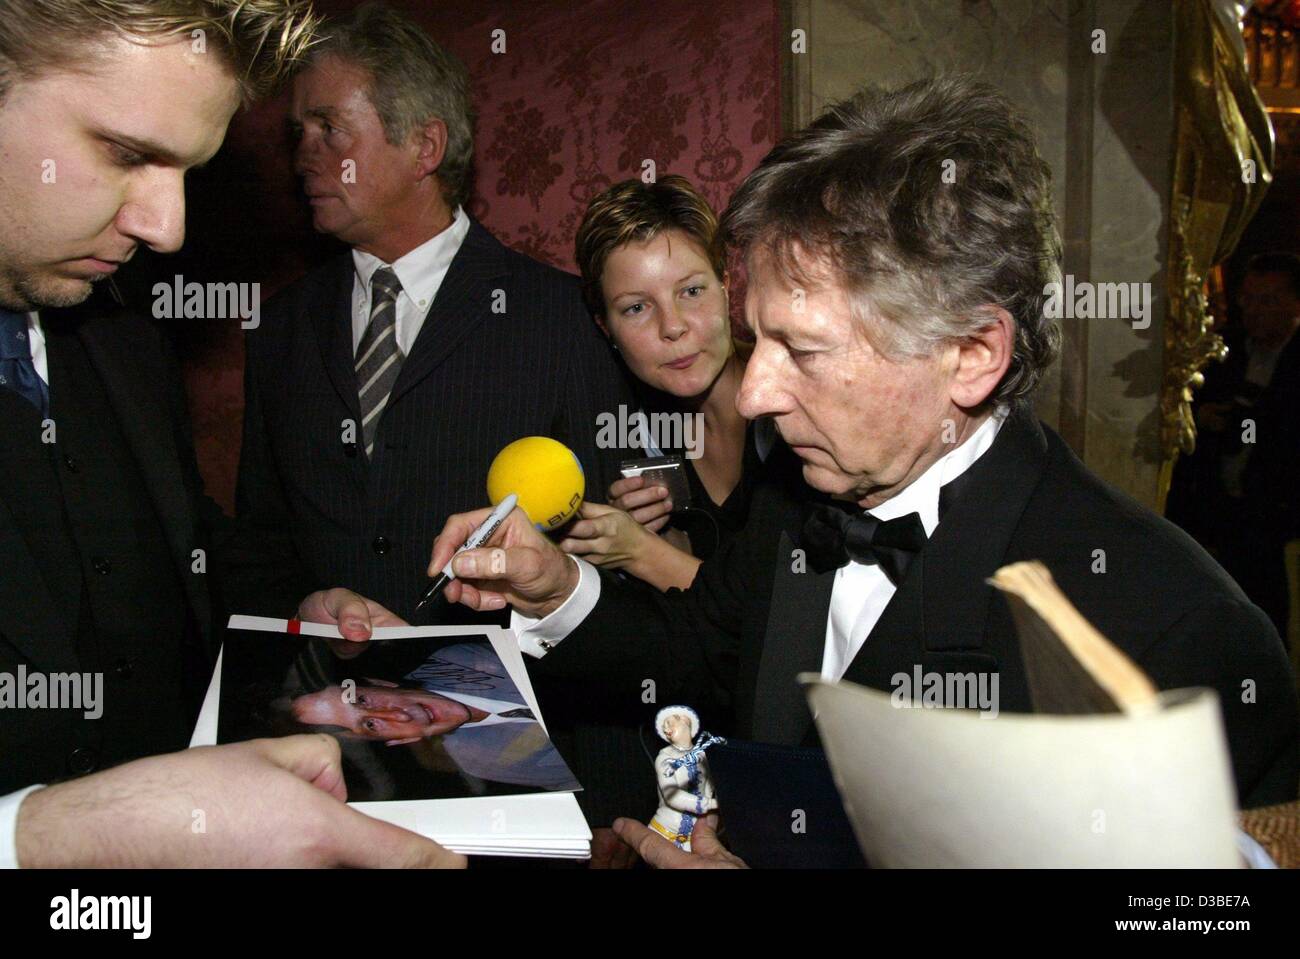 (Dpa) - Roman Polanski (R), regista, autore, attore e produttore, segni autografi dopo la cerimonia di premiazione del Bayerischer Filmpreis (bavarese film prize) di Monaco di Baviera, 17 gennaio 2003. Polanski ha vinto il premio per la sua vita conquiste. Il premio è uno dei più celebri film premi in G Foto Stock